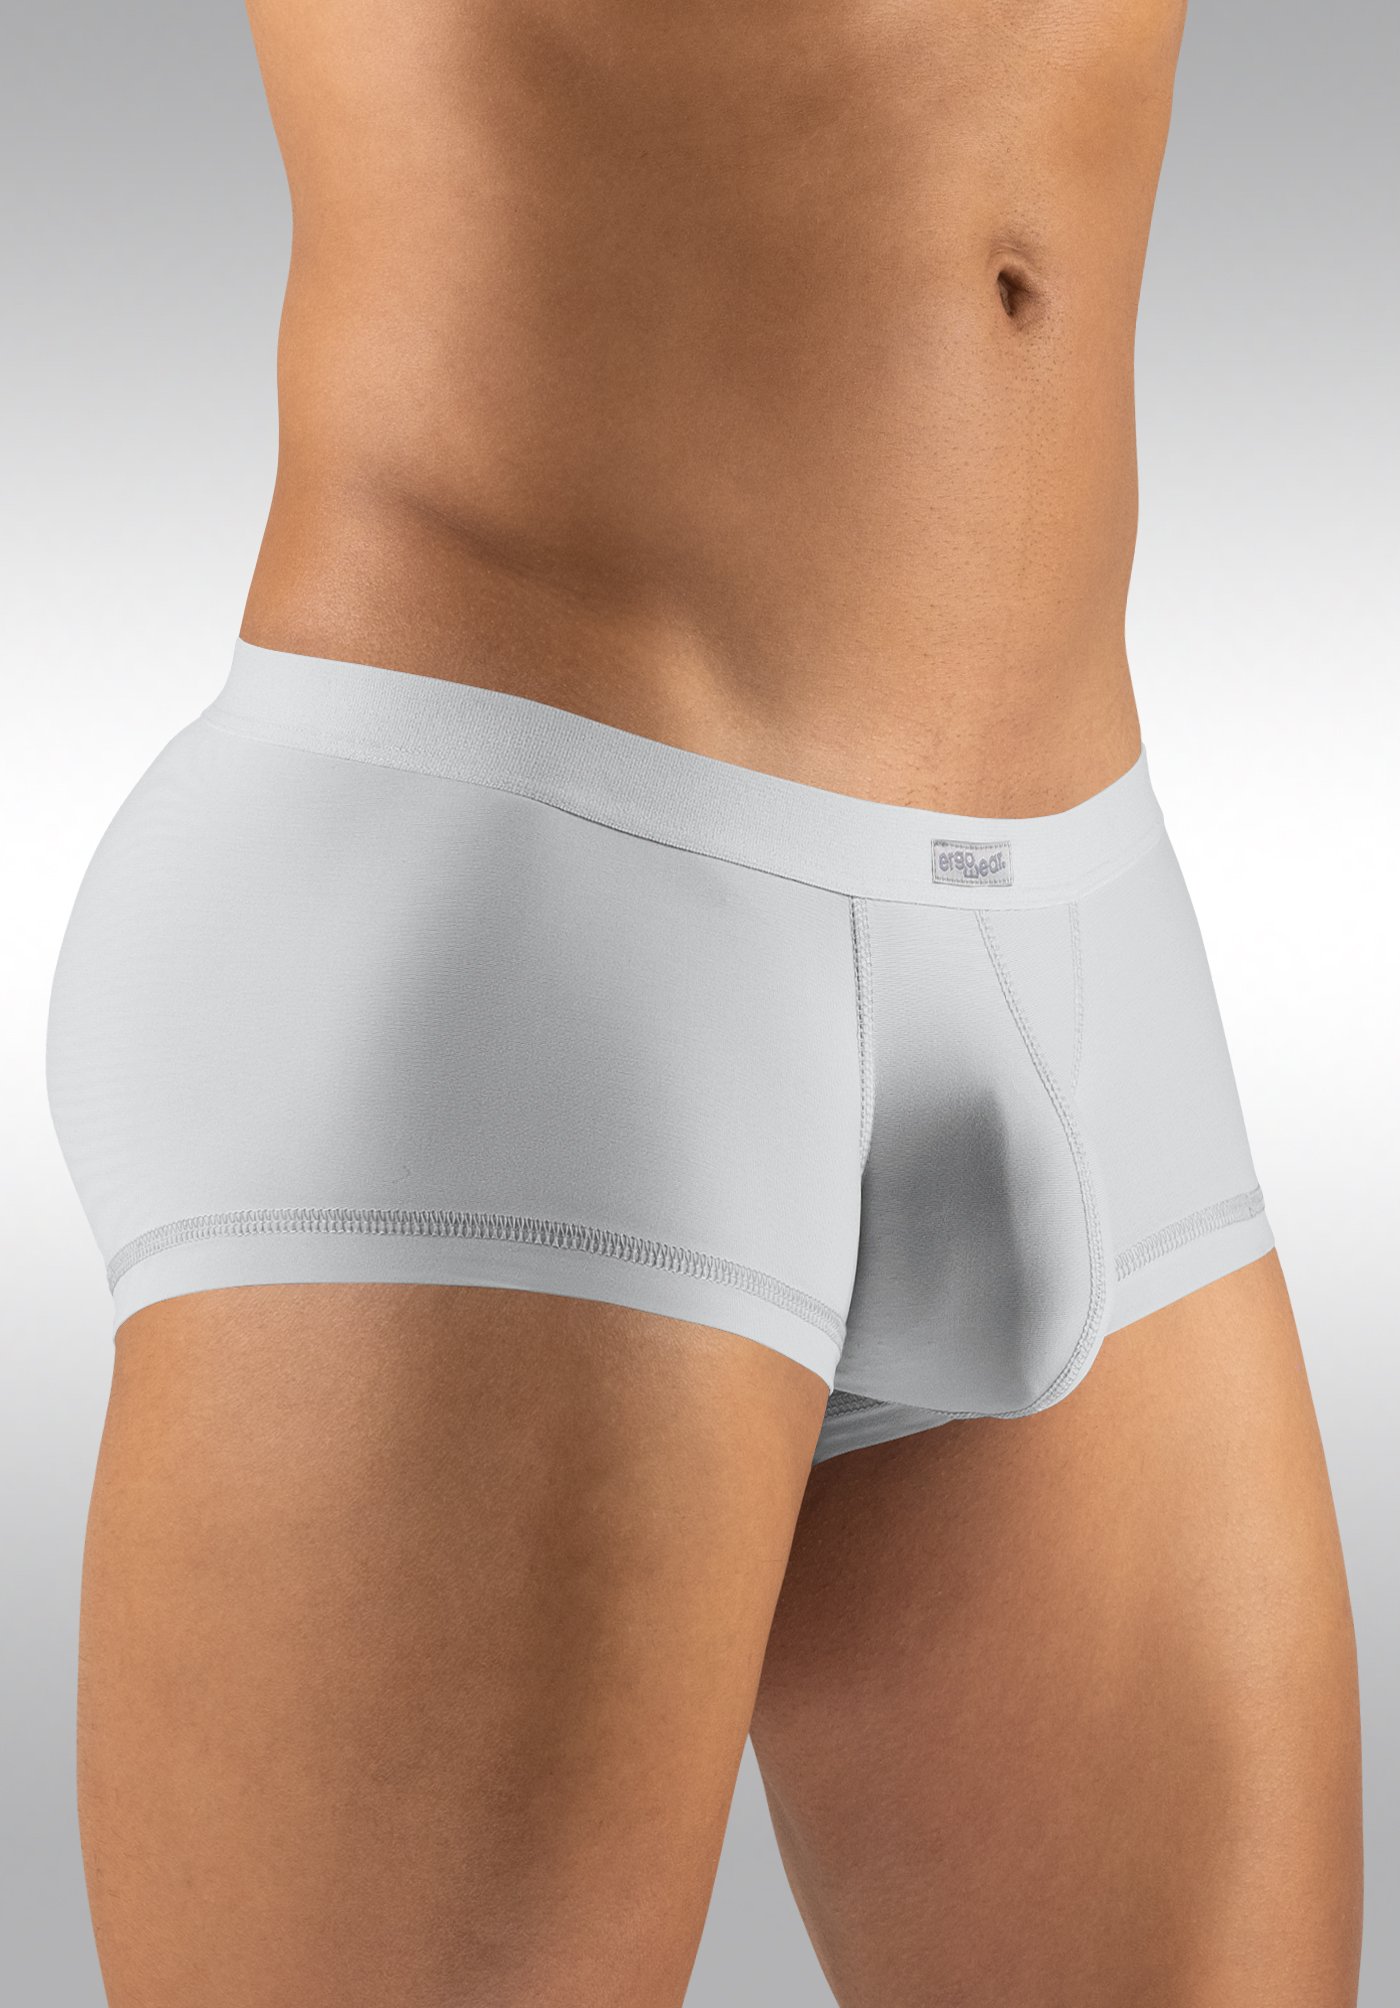 Buy Cheap Men's Underwear from Ergowear - Best Quality!